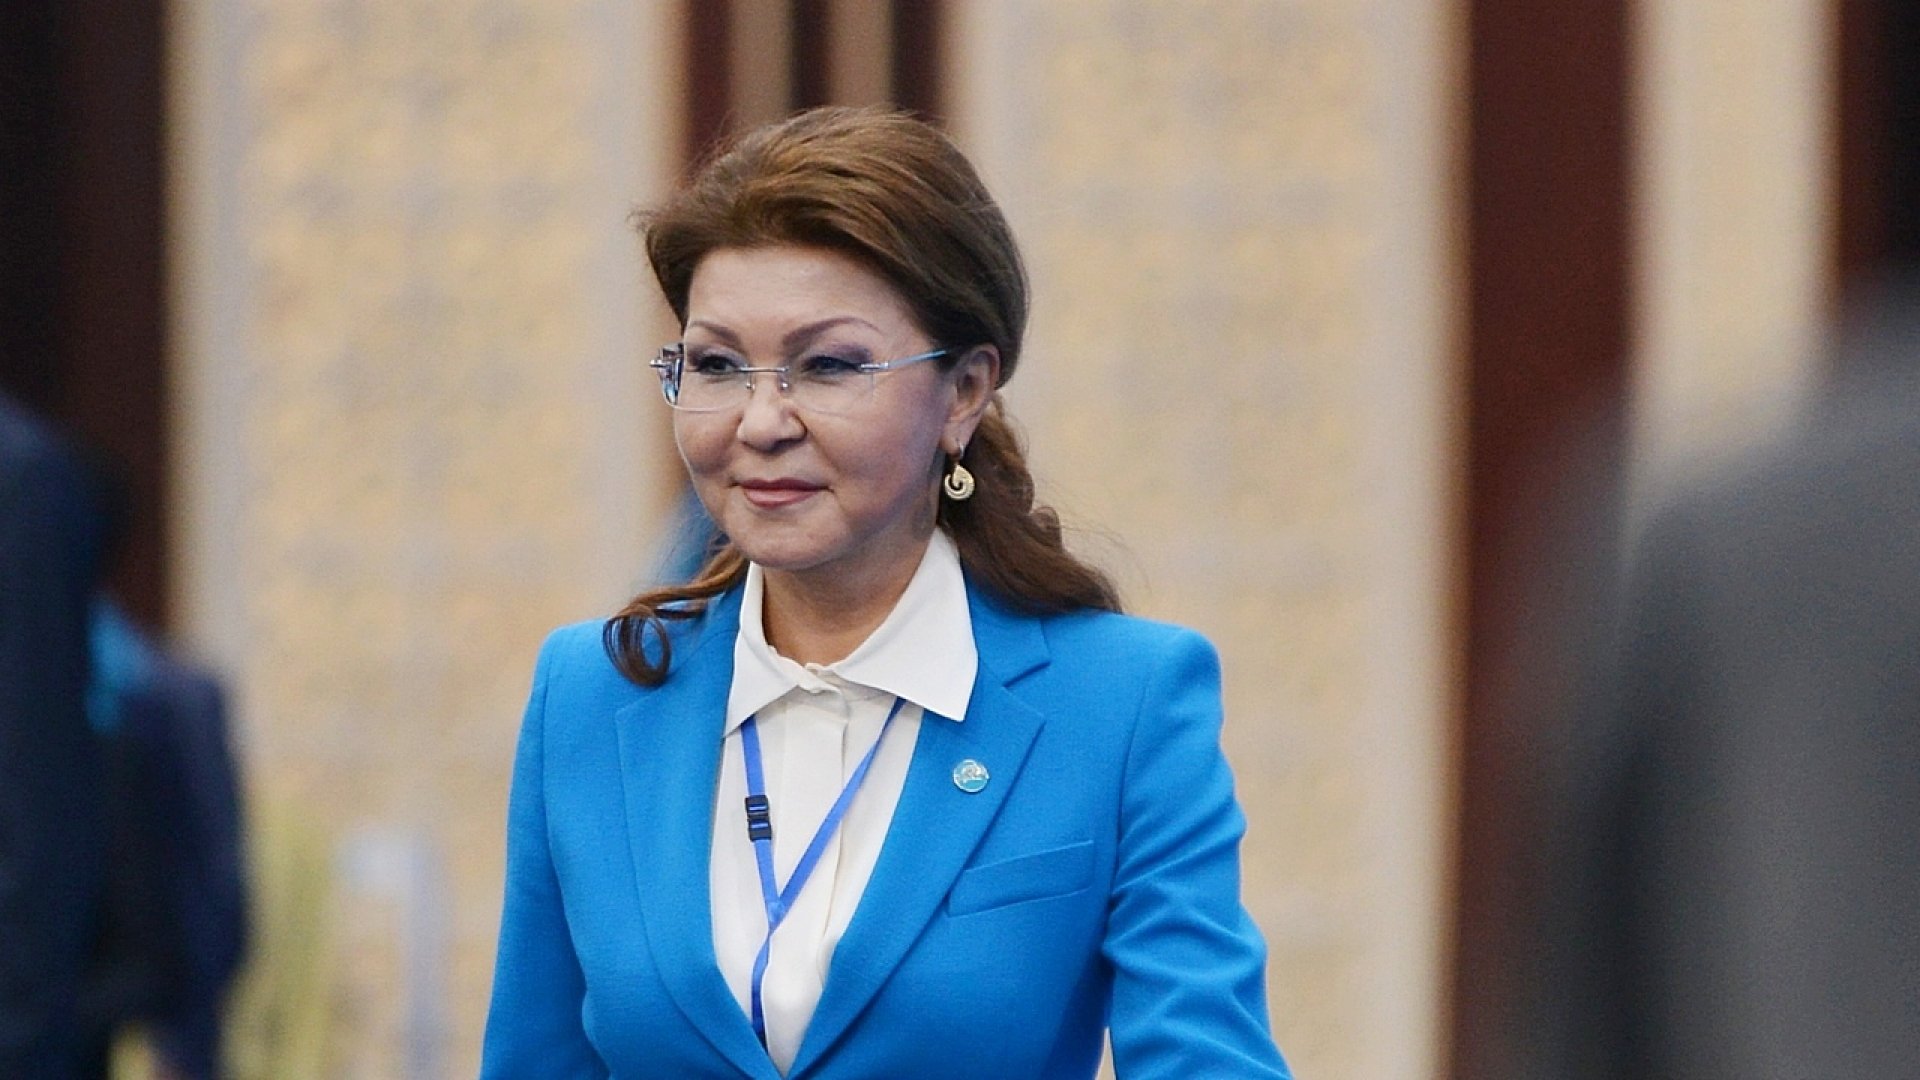 Дариға Назарбаева: Президент сайлауын әділ өткізу ортақ міндетіміз